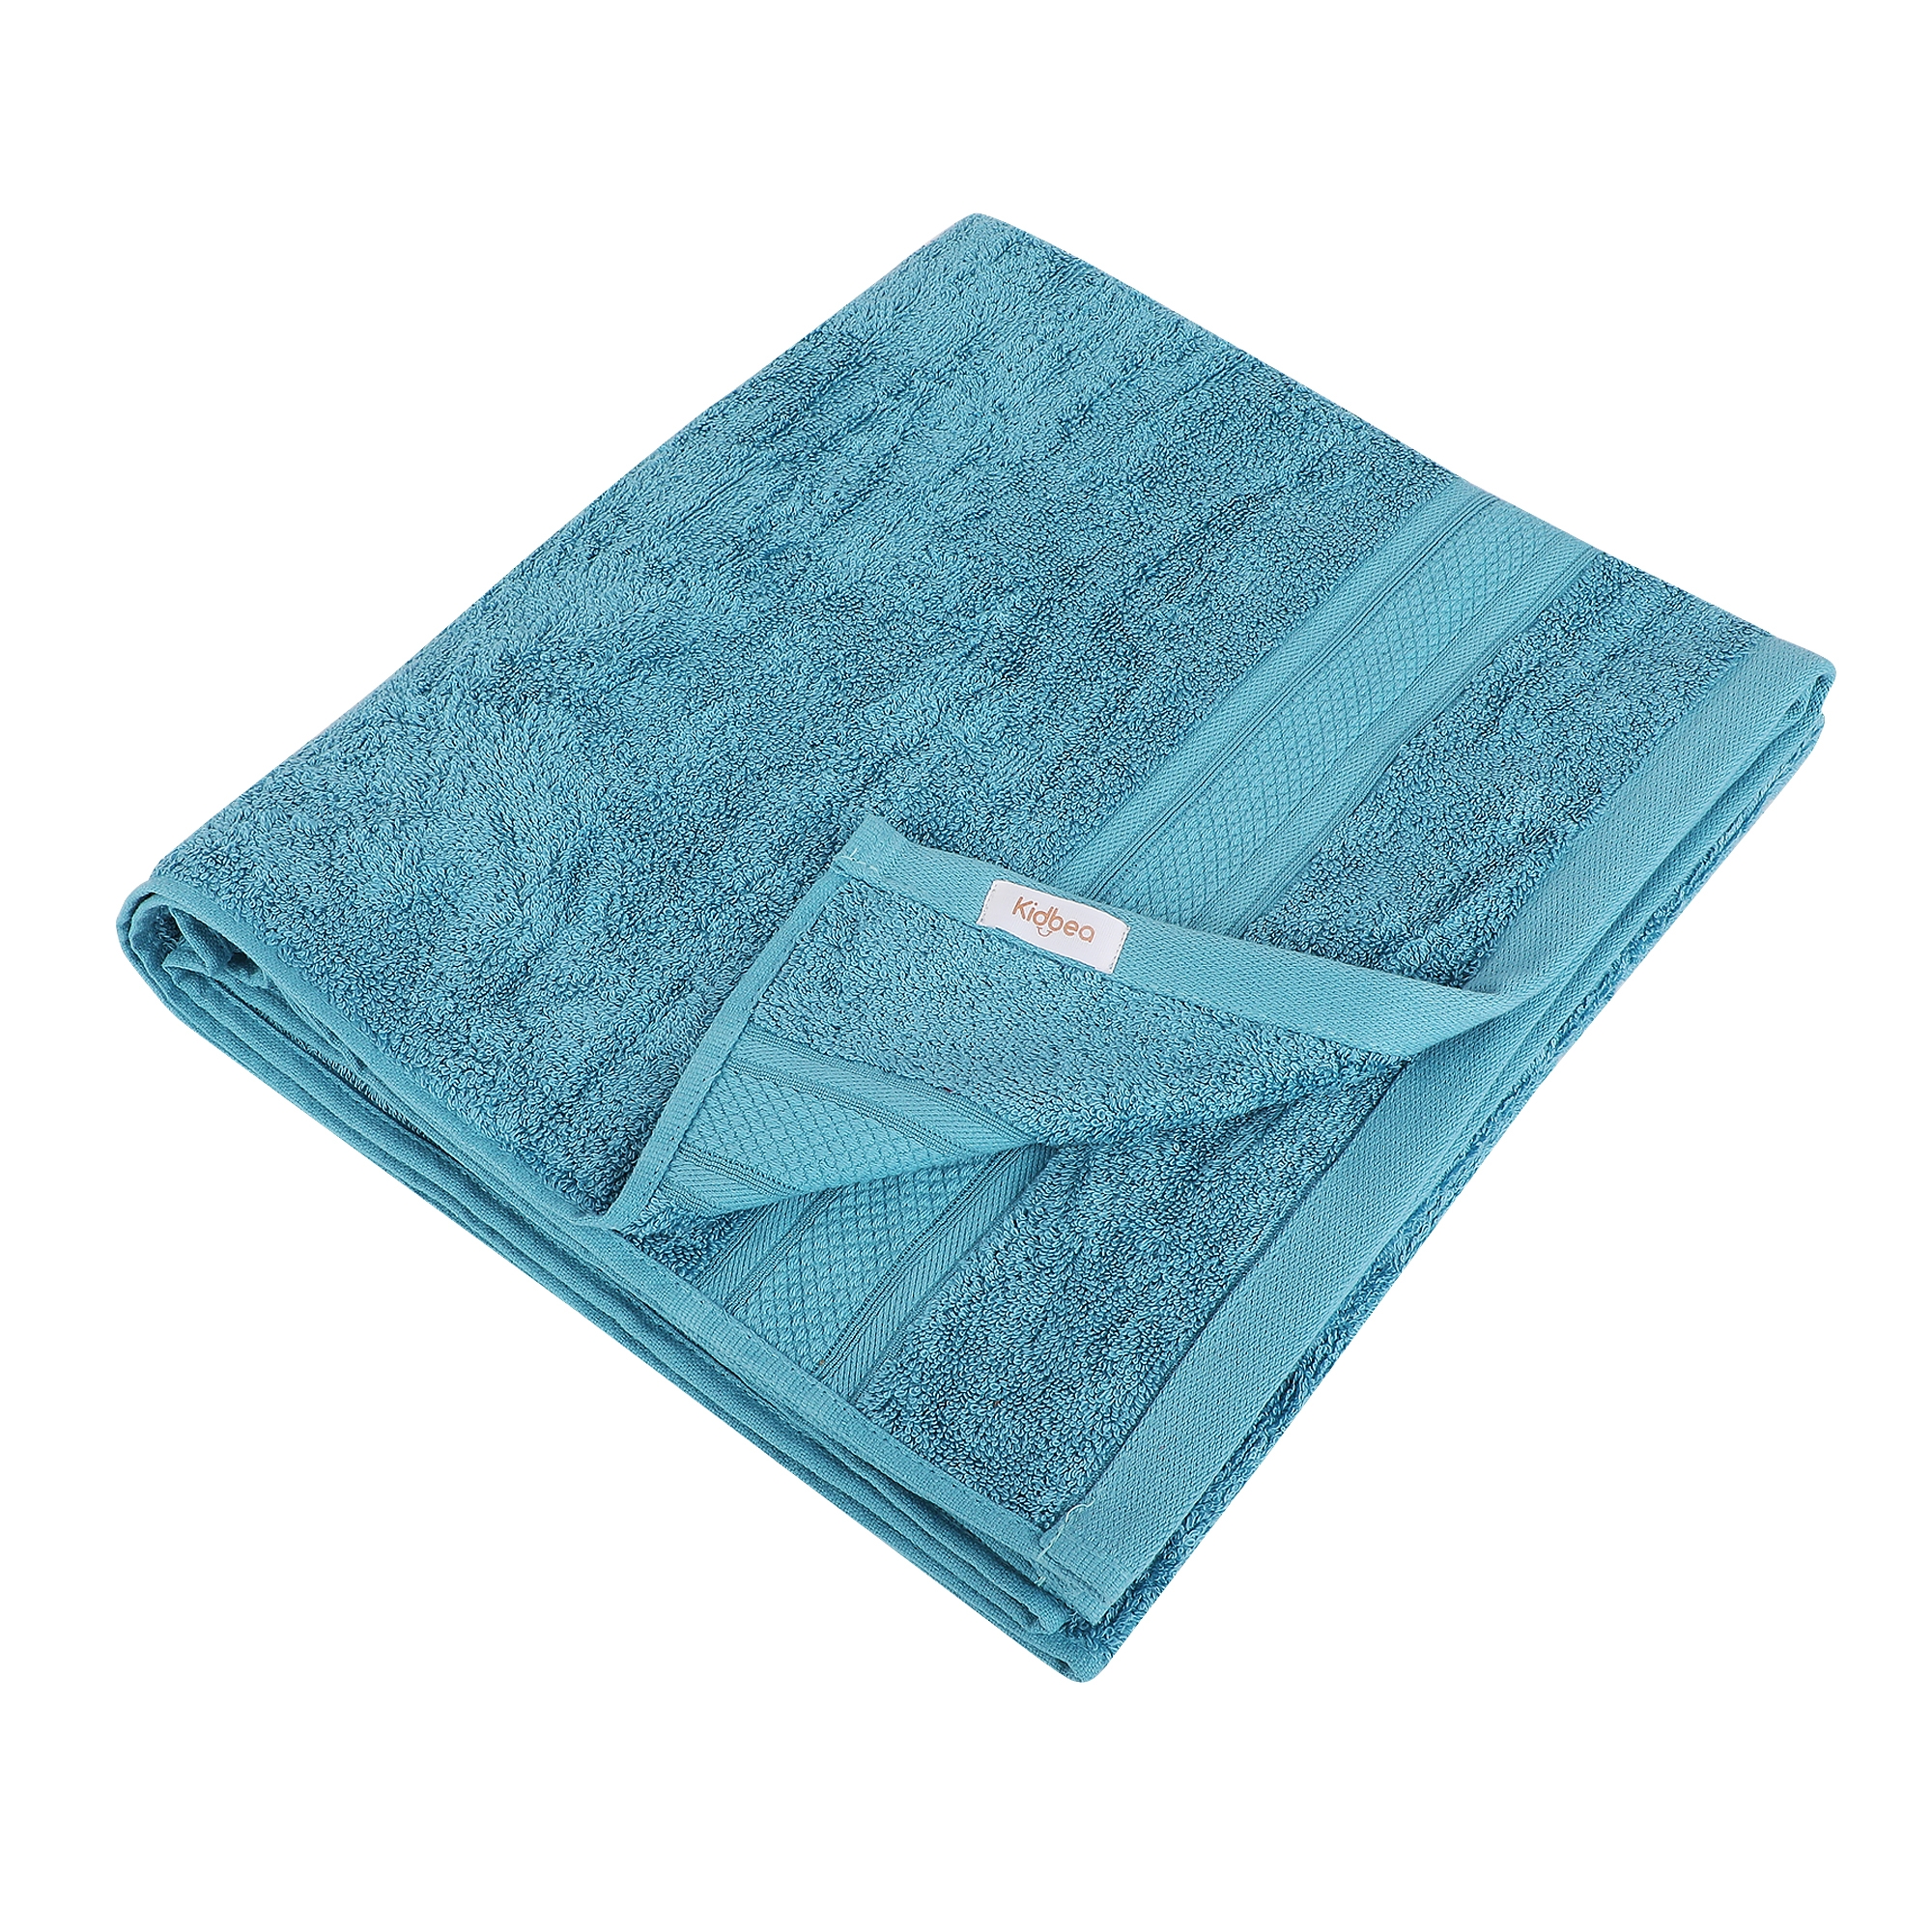 Kidbea | Kidbea Soft Blue Baby Absorbent Towel